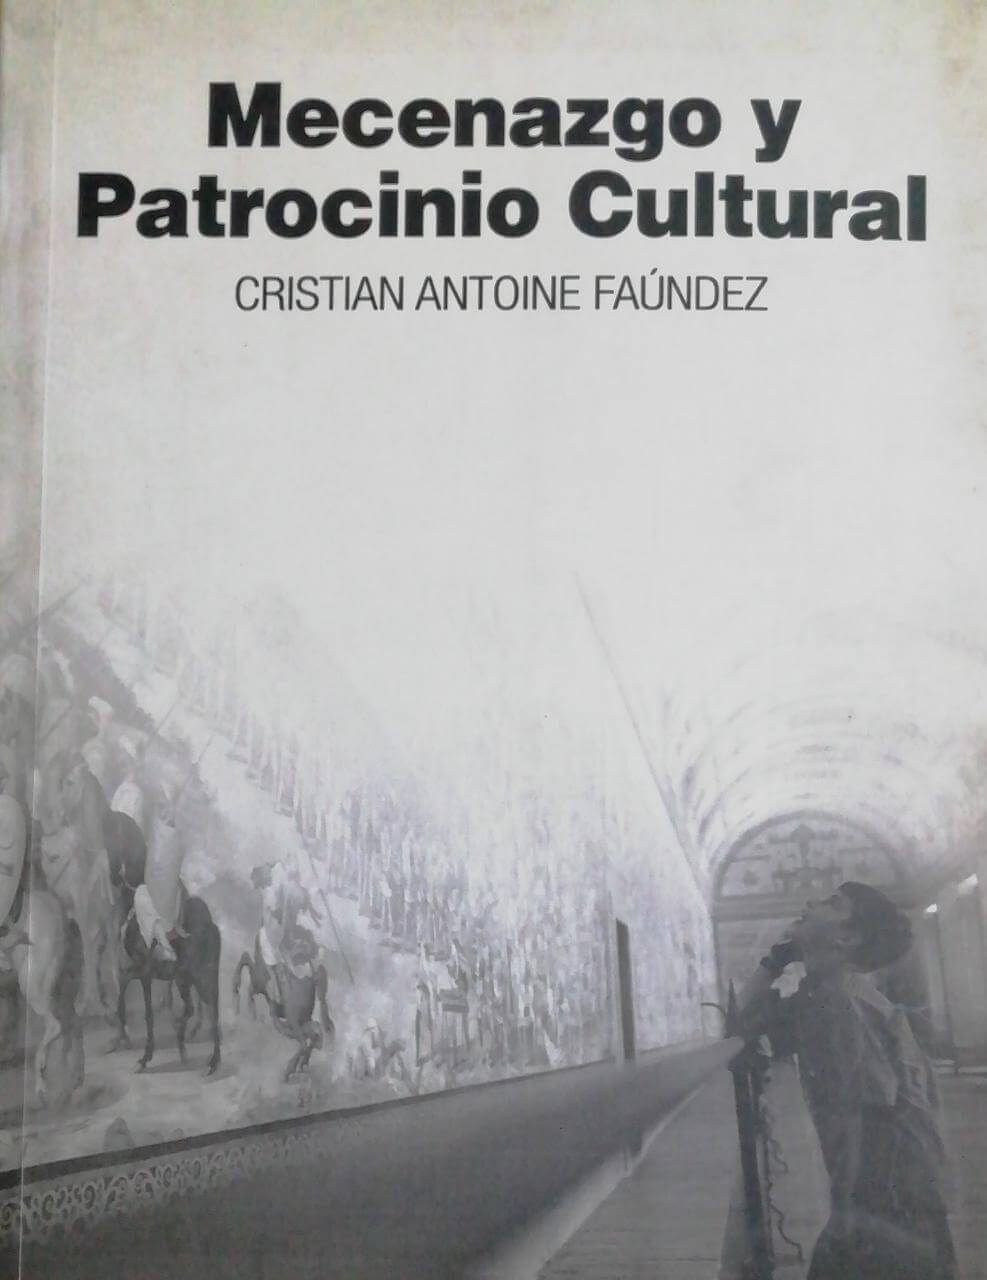 Mecenazgo y Patrocino Cultural